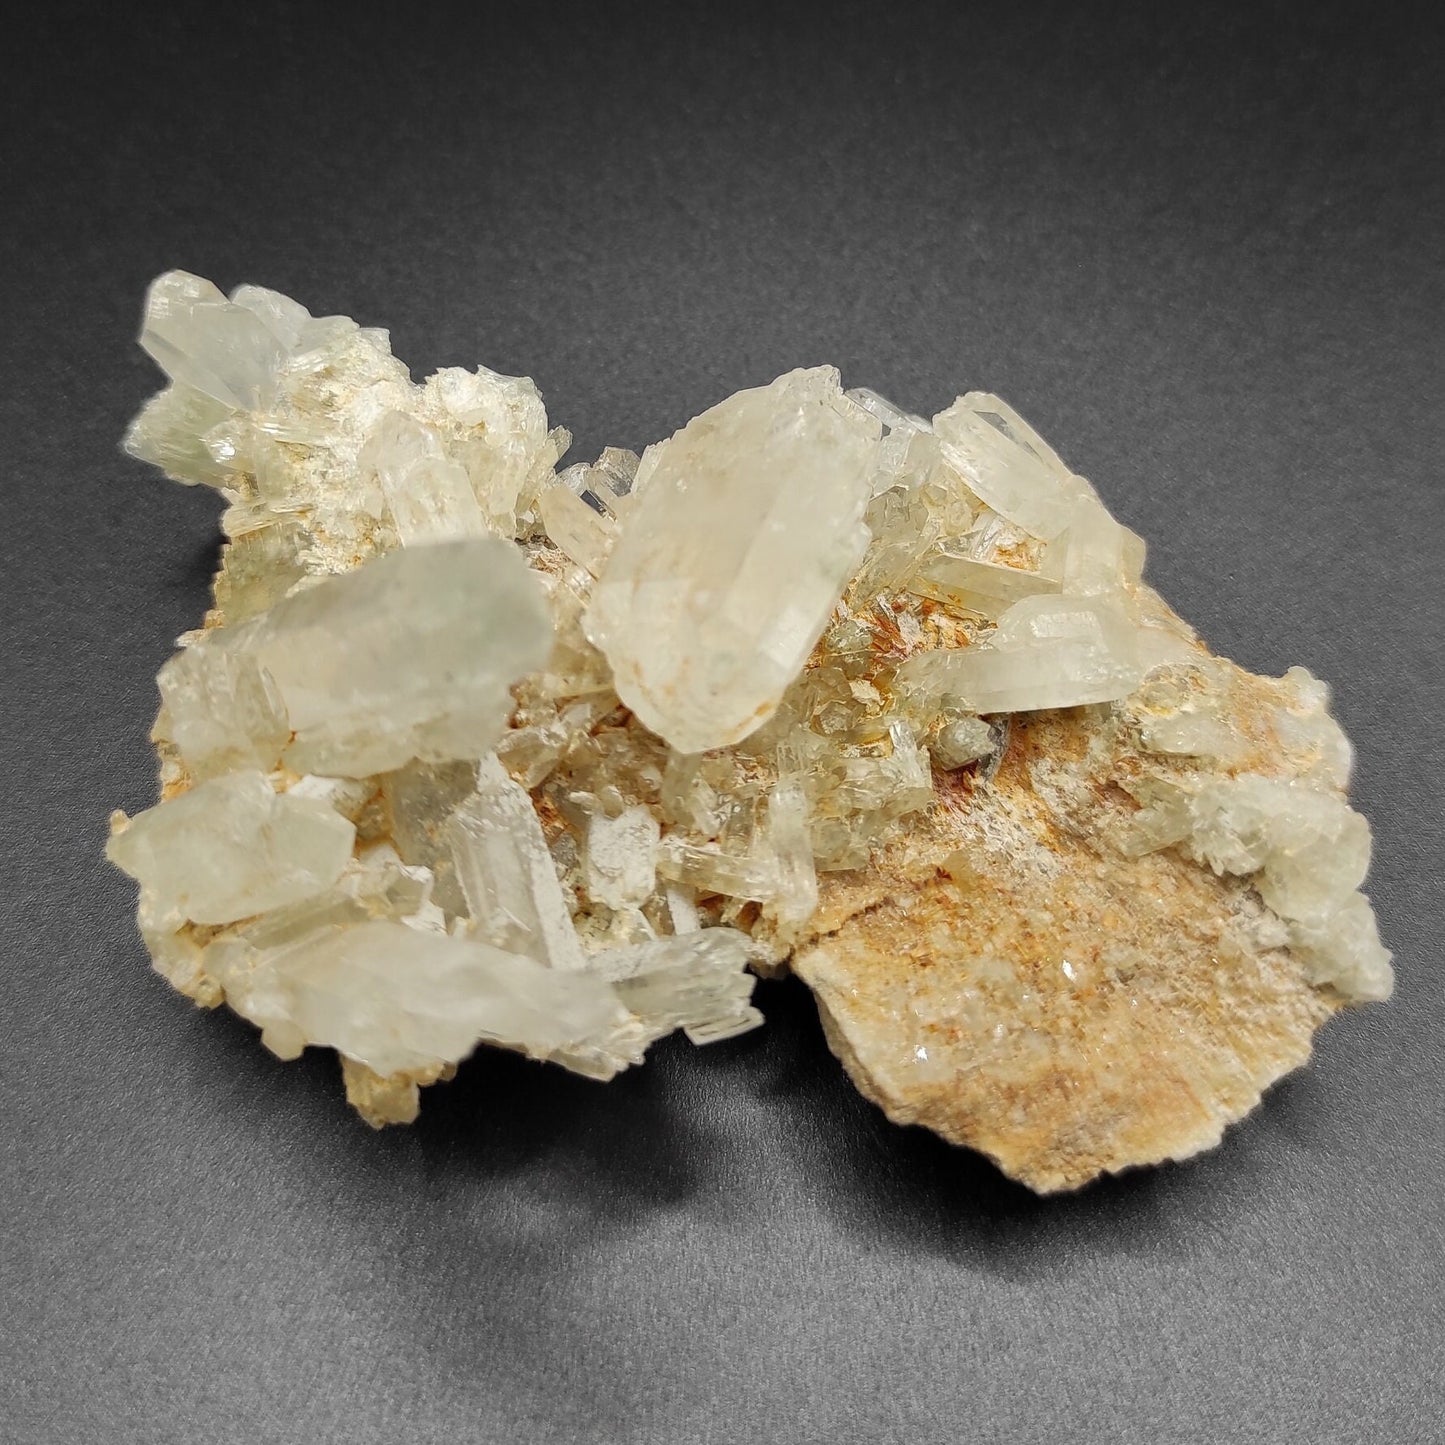 89g Quartz Crystal Cluster Natural Clear Quartz Mineral Quartz Crystals Pakistan Quartz Specimen Natural Gemstones Raw Quartz Rough Crystals